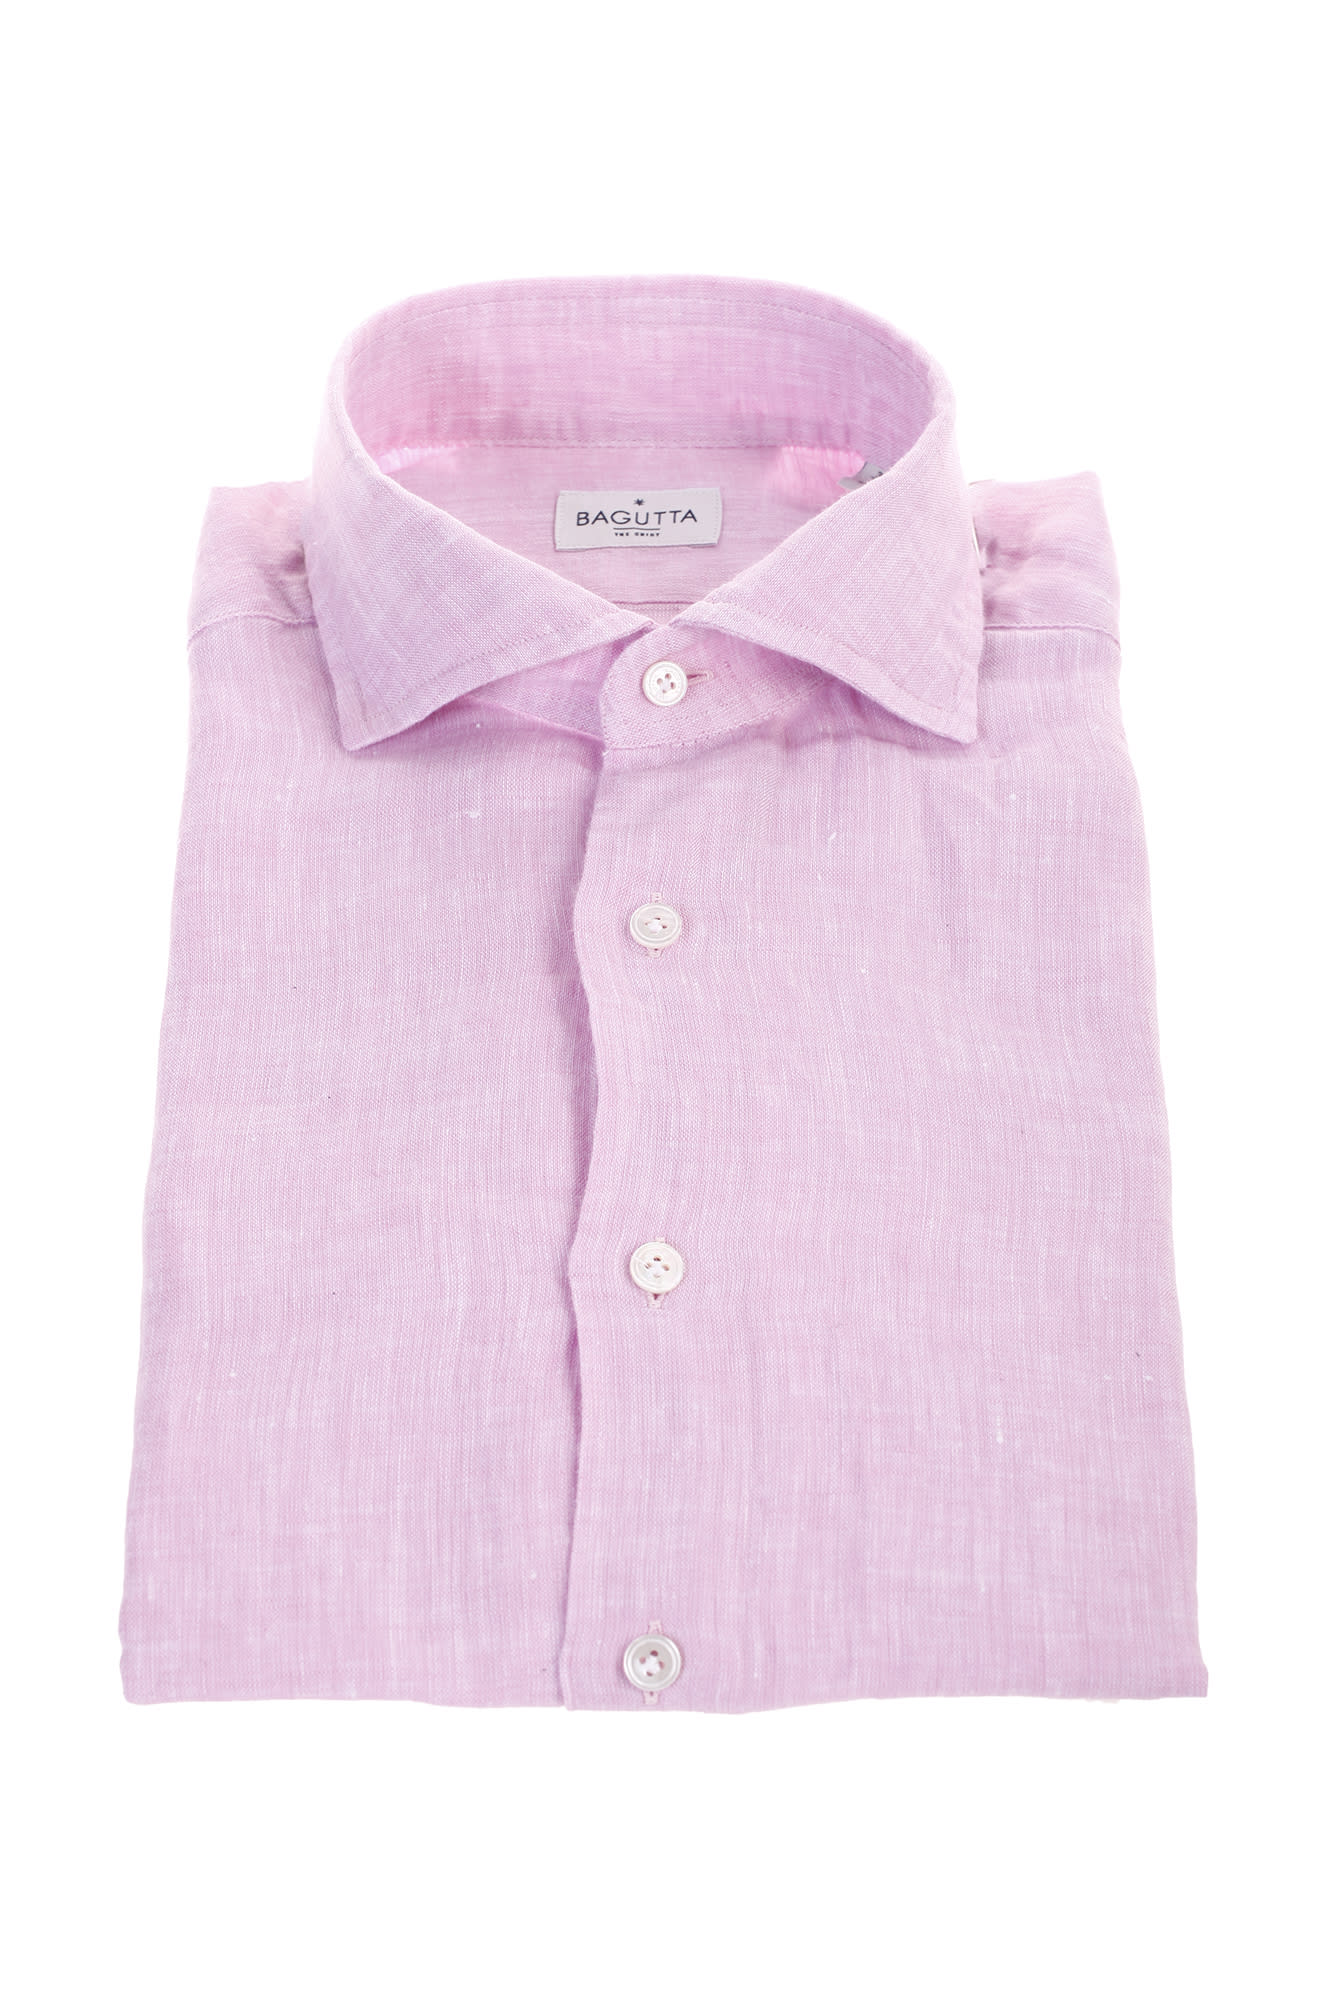 Bagutta pink linen shirt